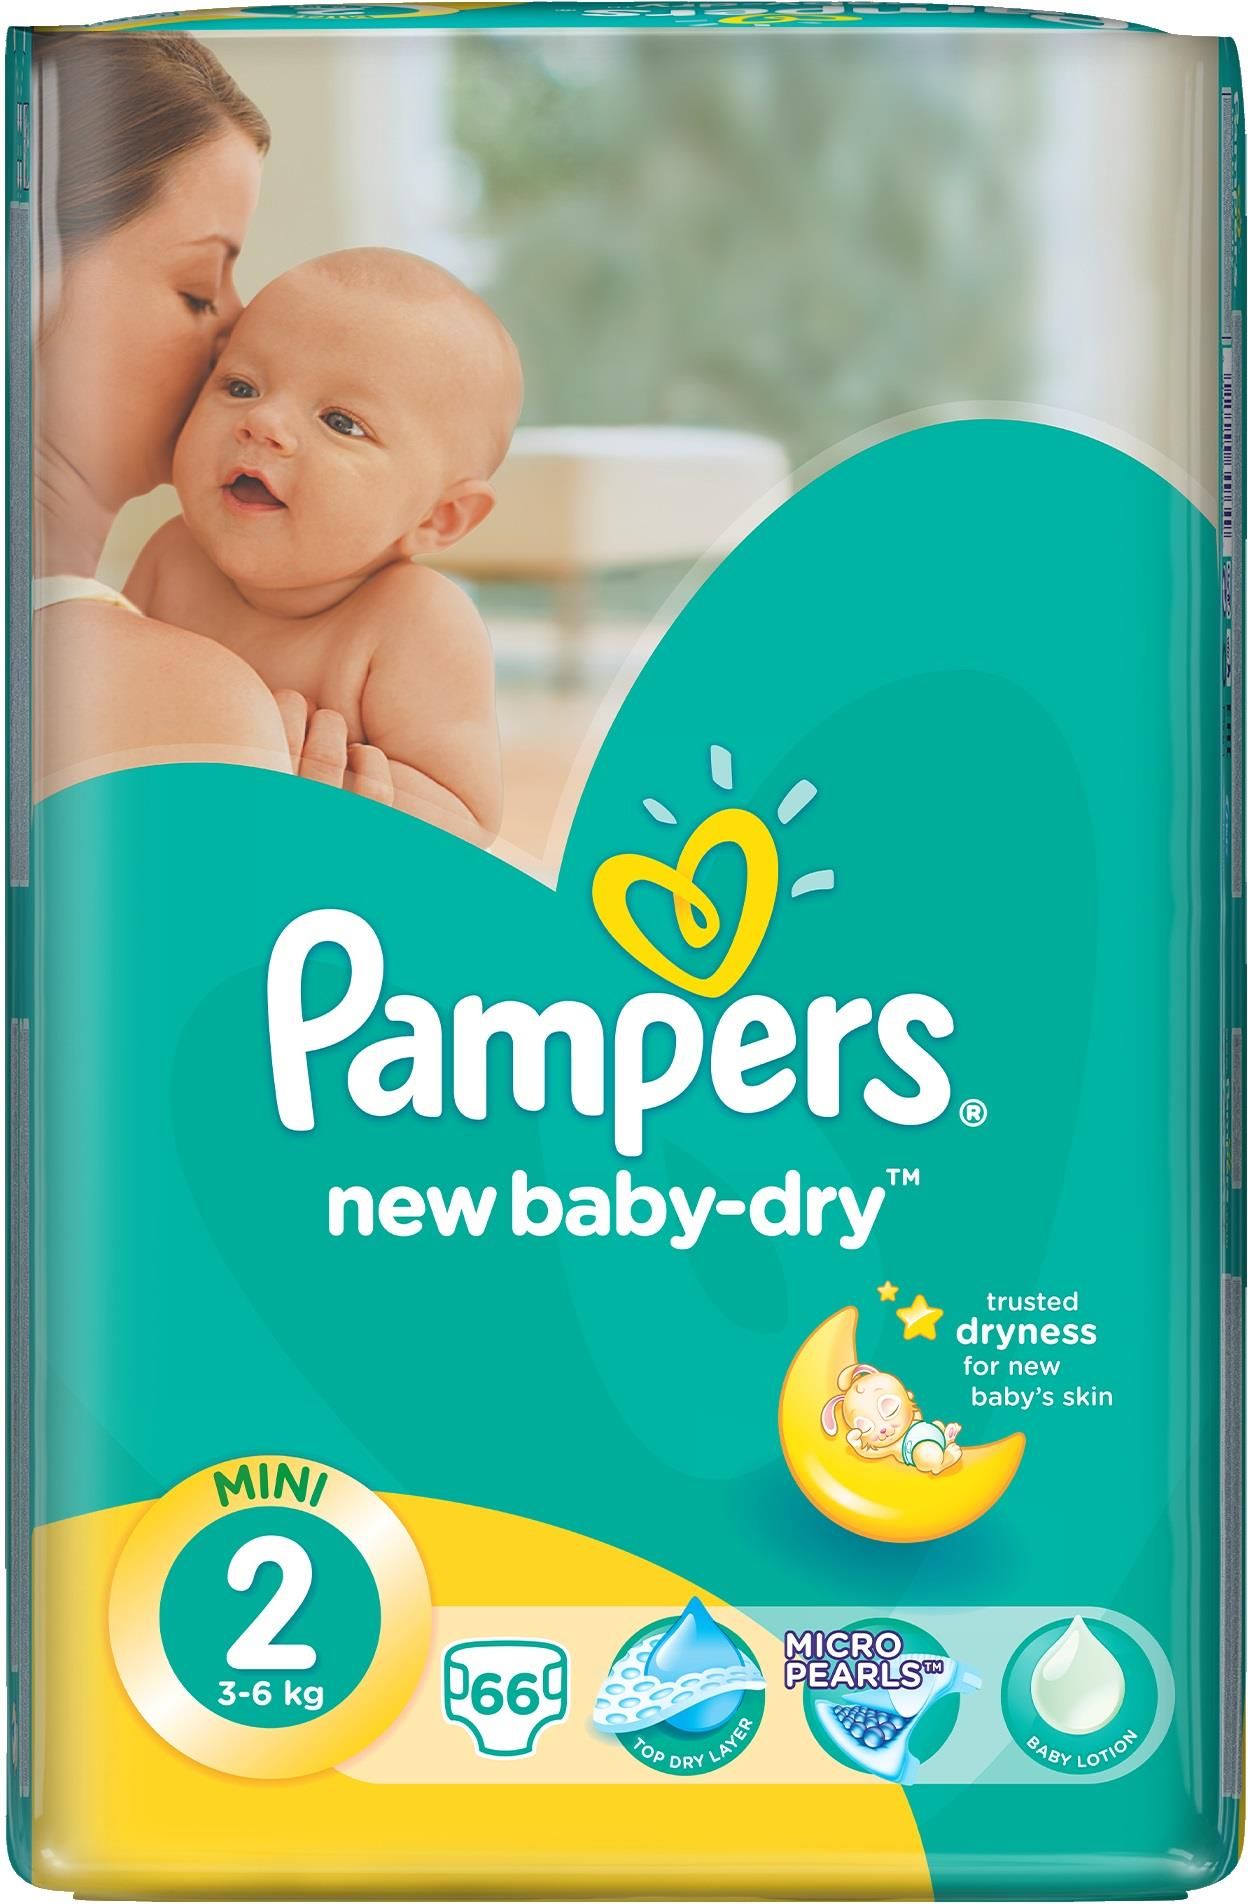 pampers newbaby-dry pieluchy rozmiar 2